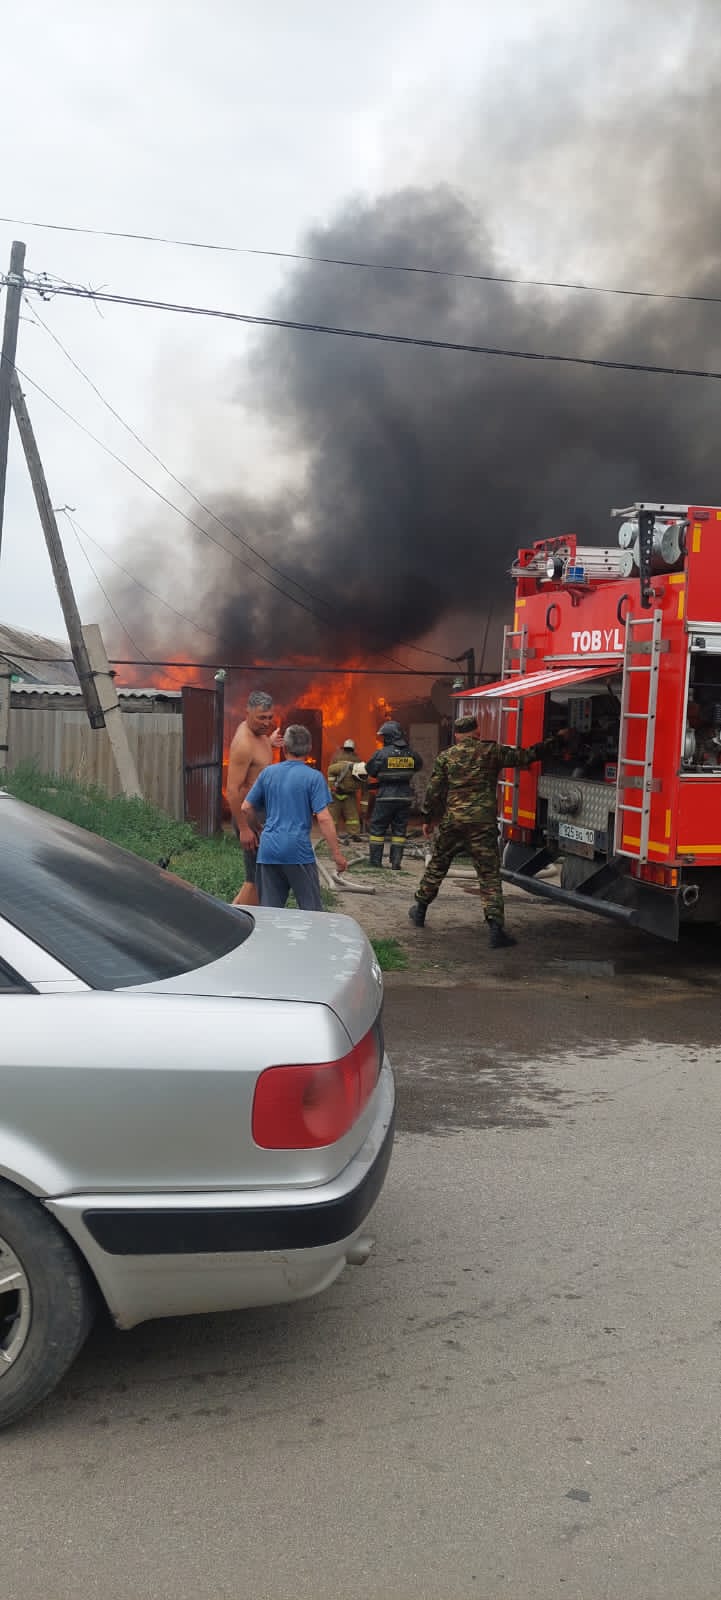 На частном подворье в г. Тобыл горели гараж, хозпостройка и автомобиль